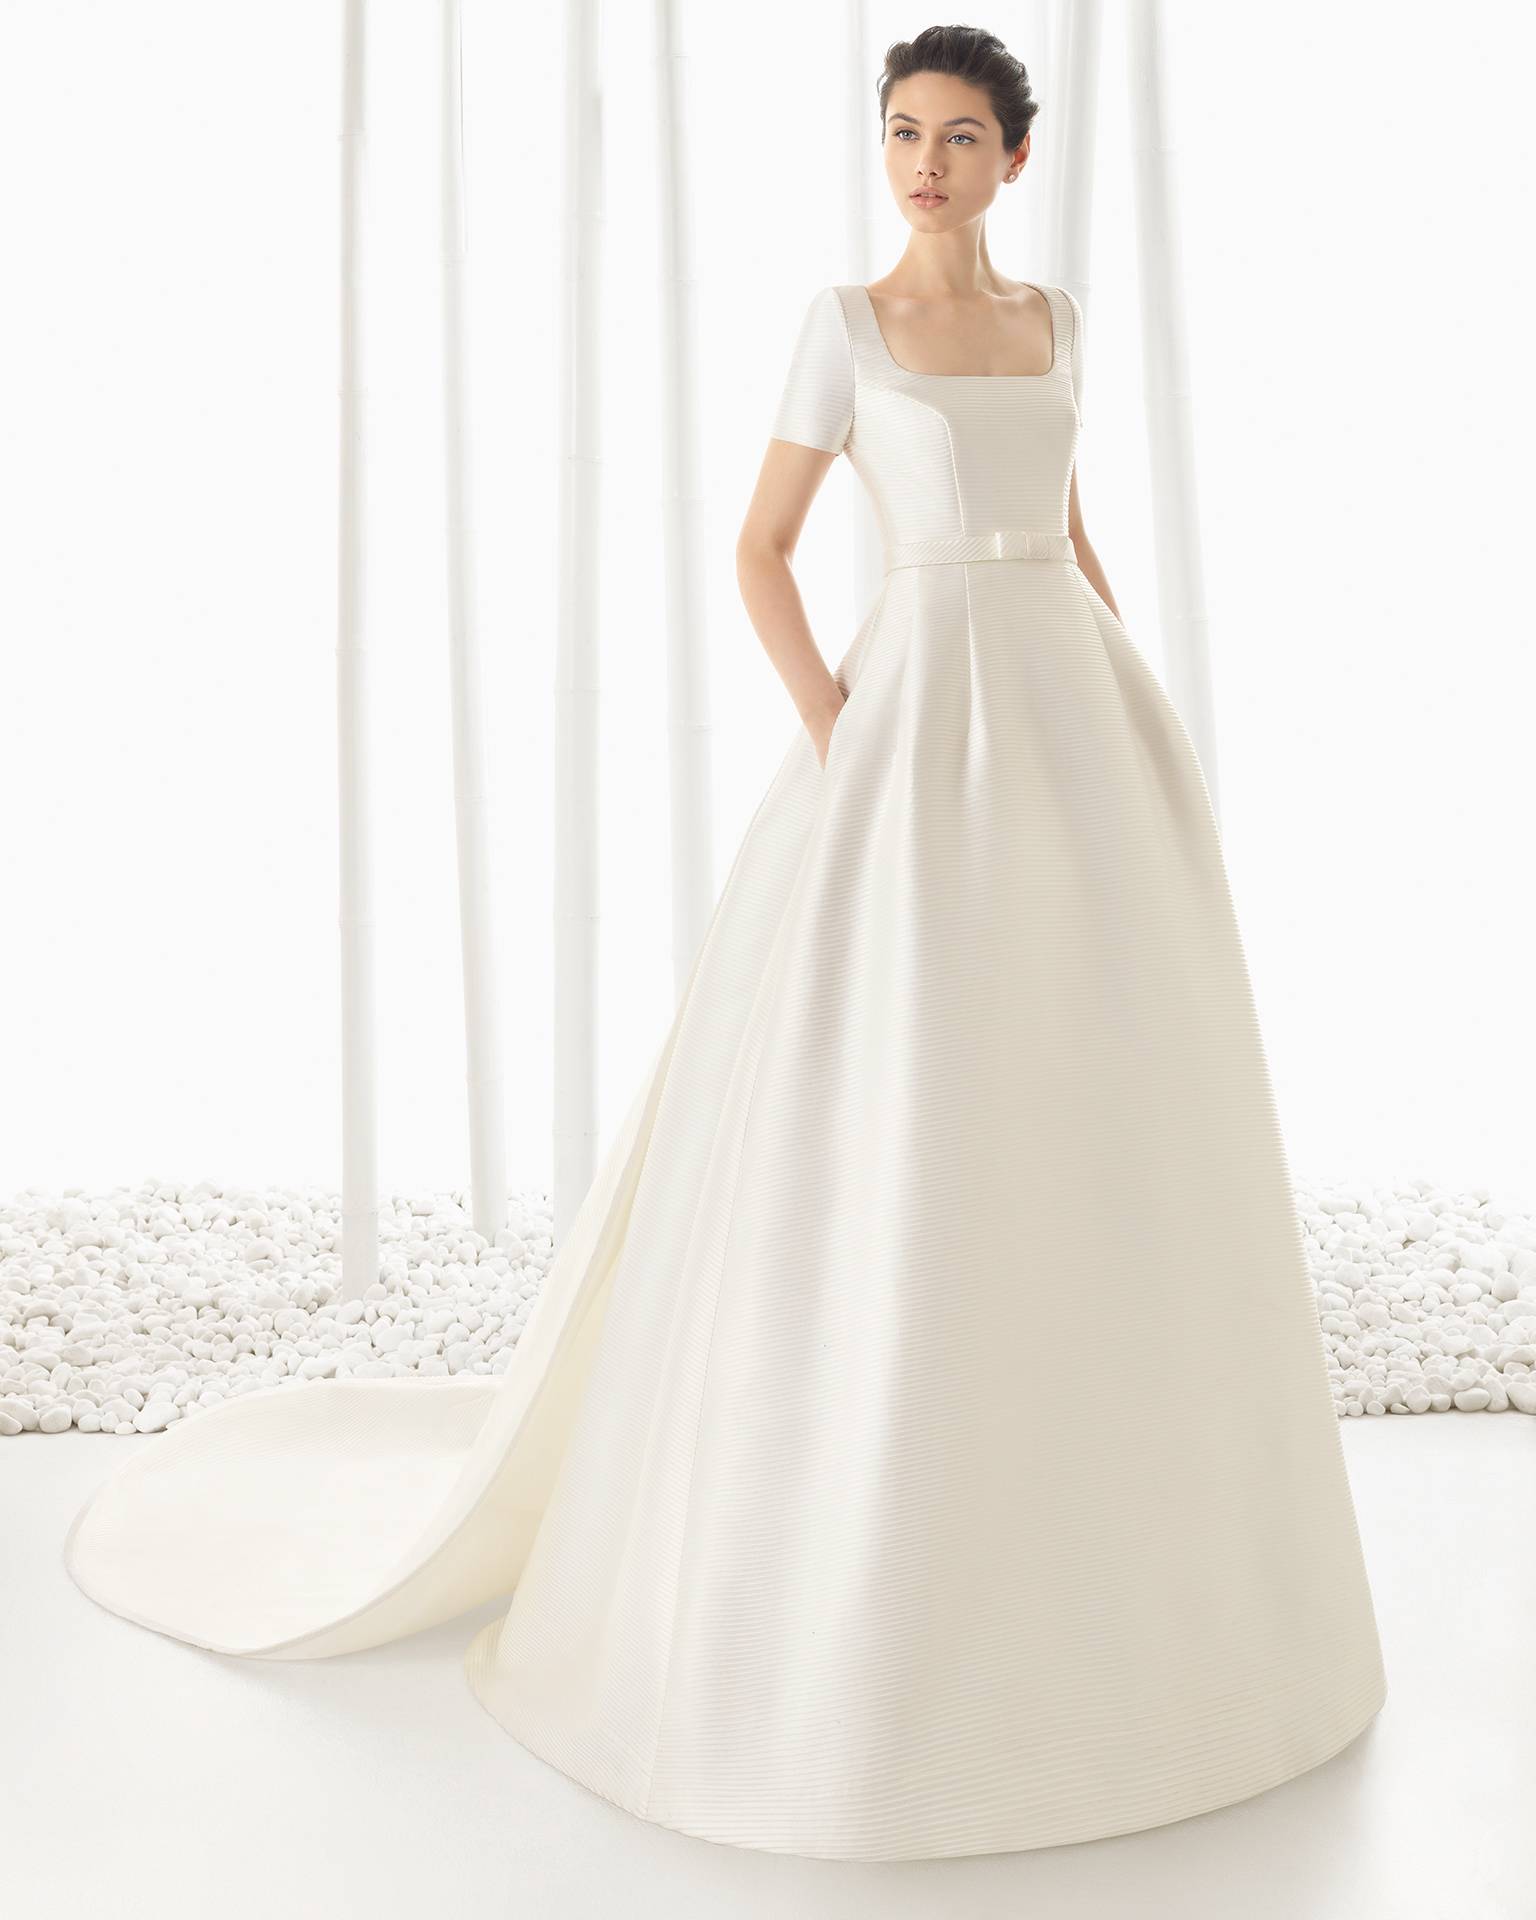 vestidos de novia coleccion barcelona bridal week 2015